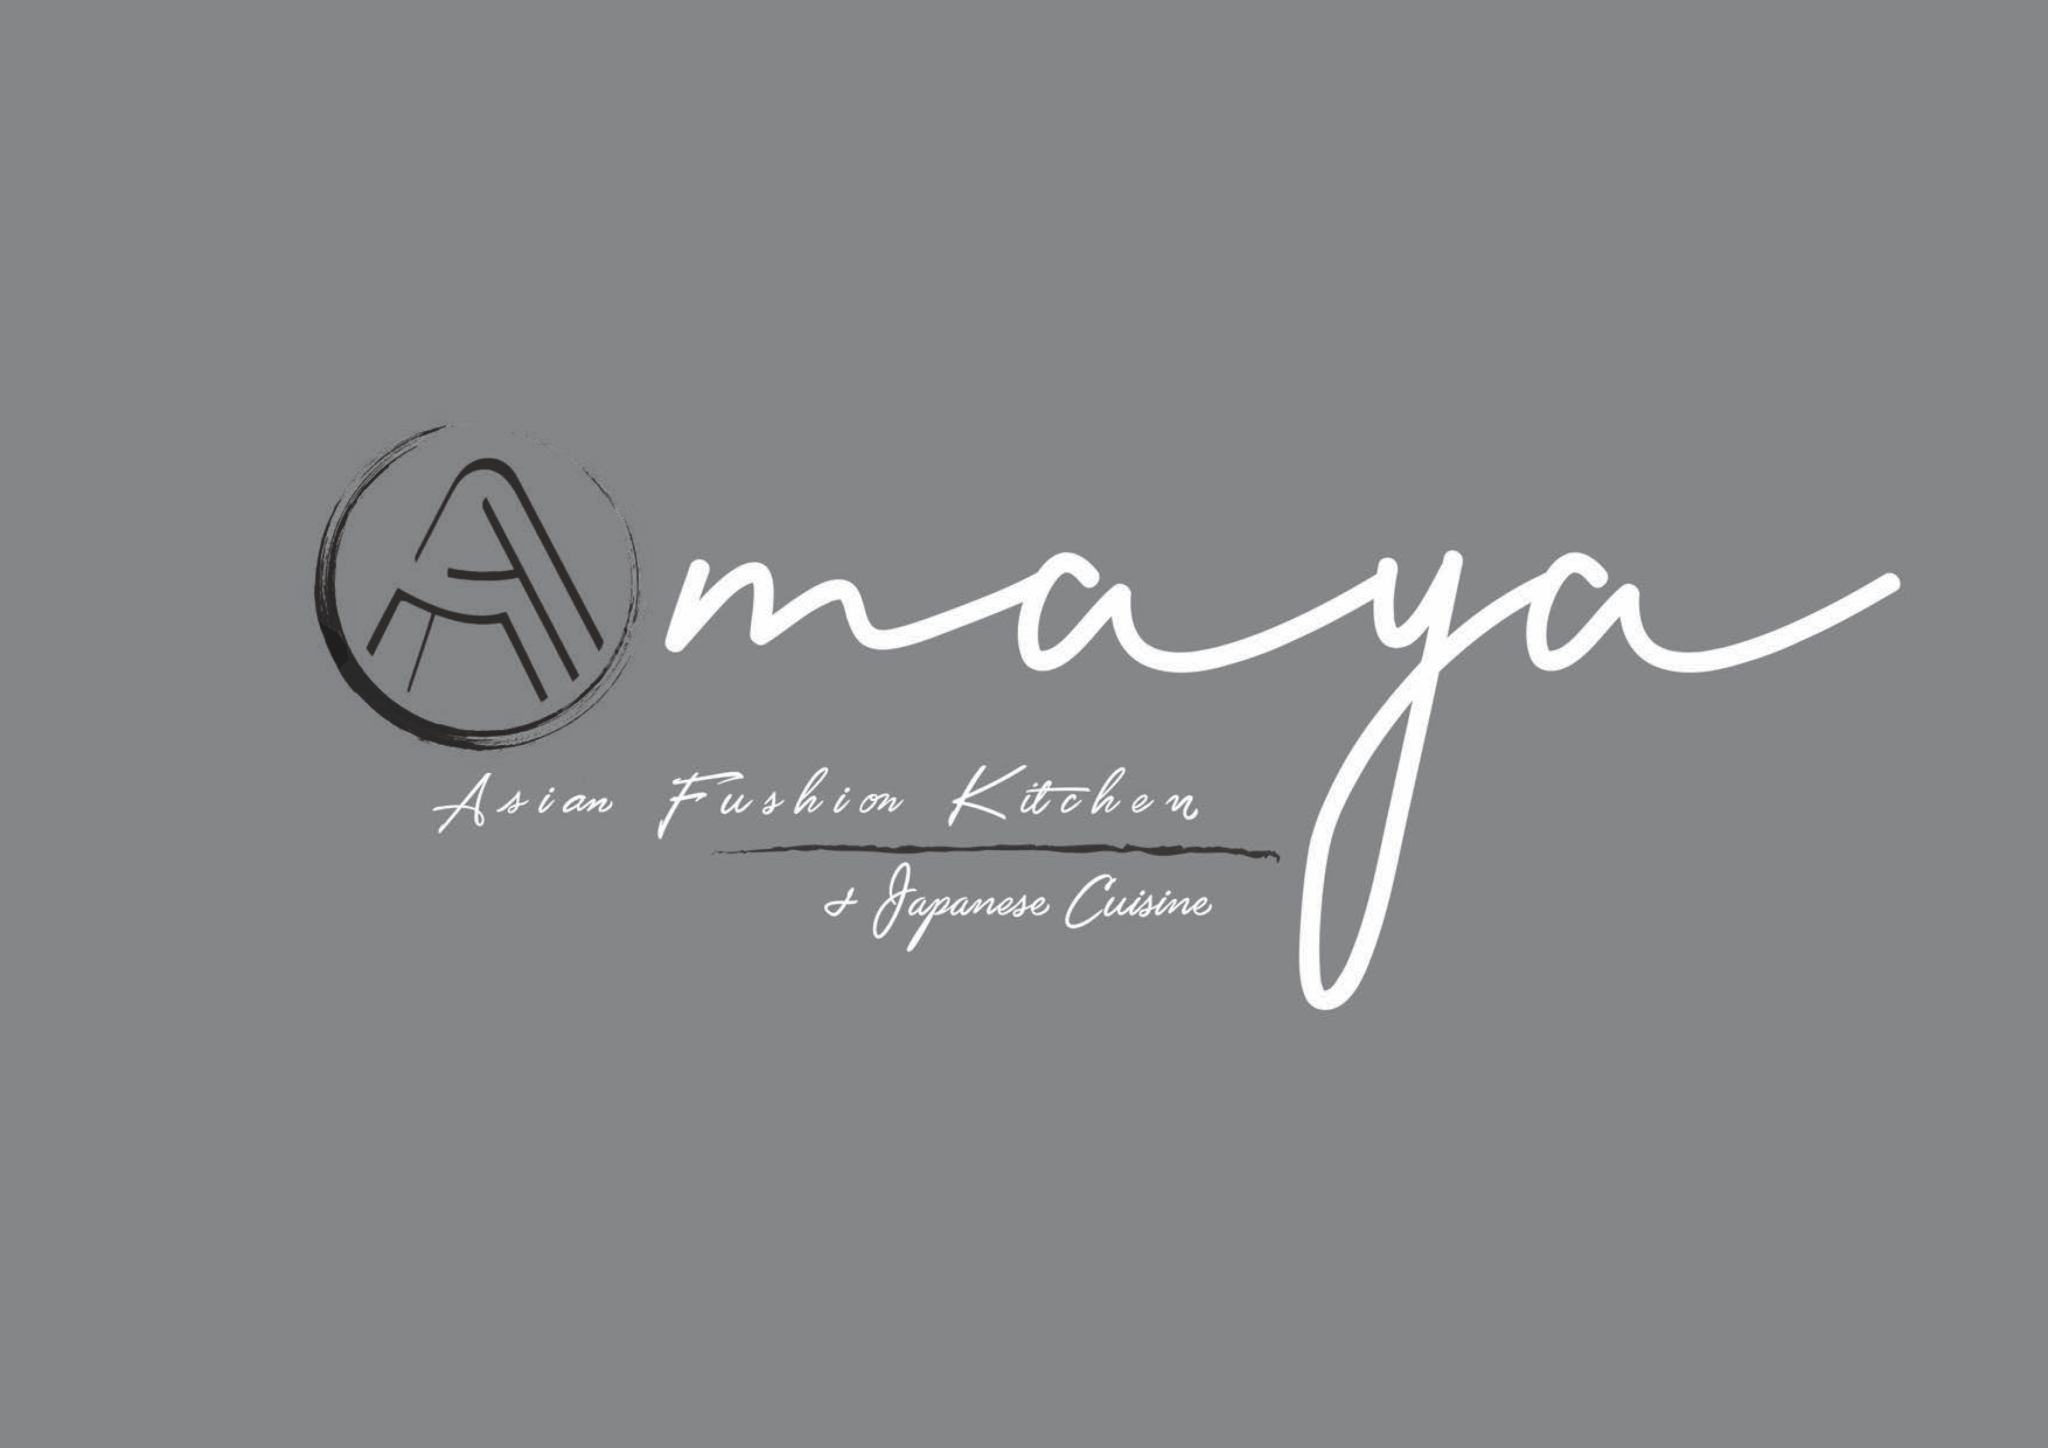 Amaya Restaurant Ingolstadt - Asiatische Gerichte, Sushi und mehr